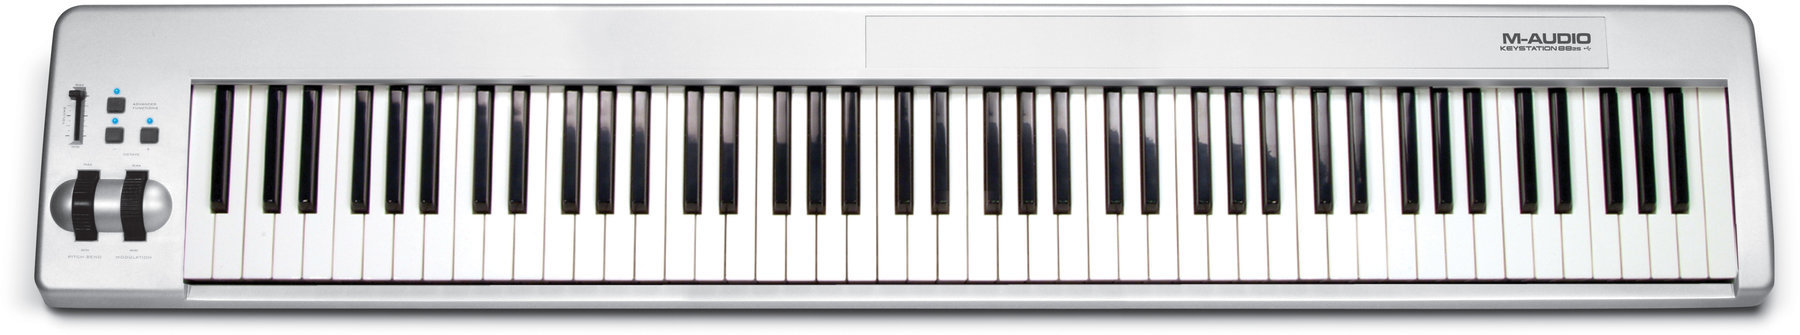 MIDI keyboard M-Audio Keystation 88 es